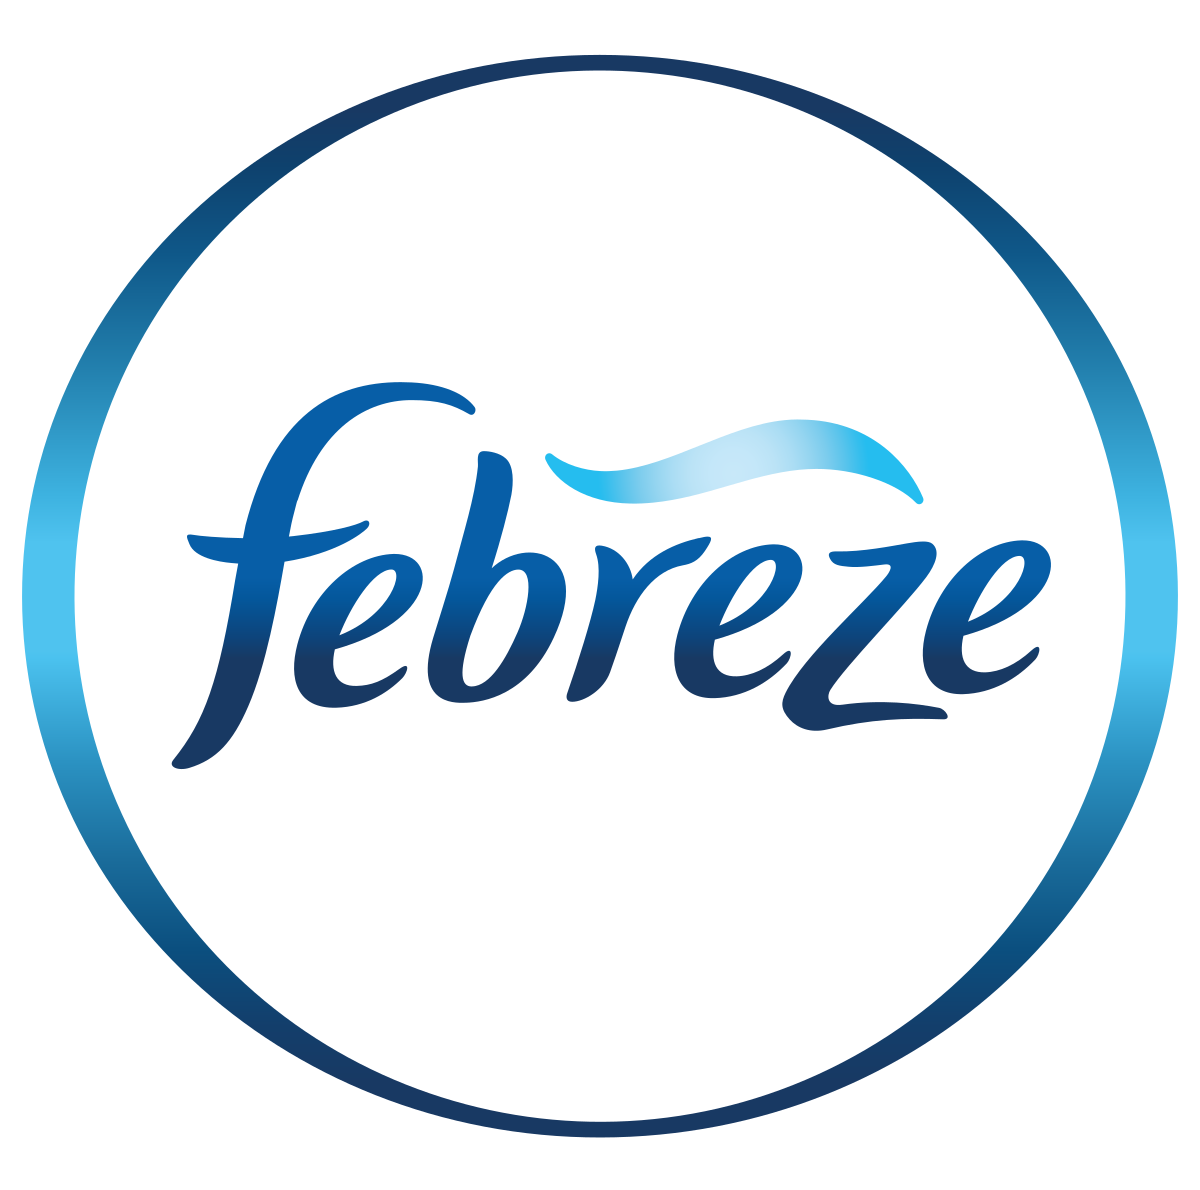 Febreeze products sold at JDS DIY